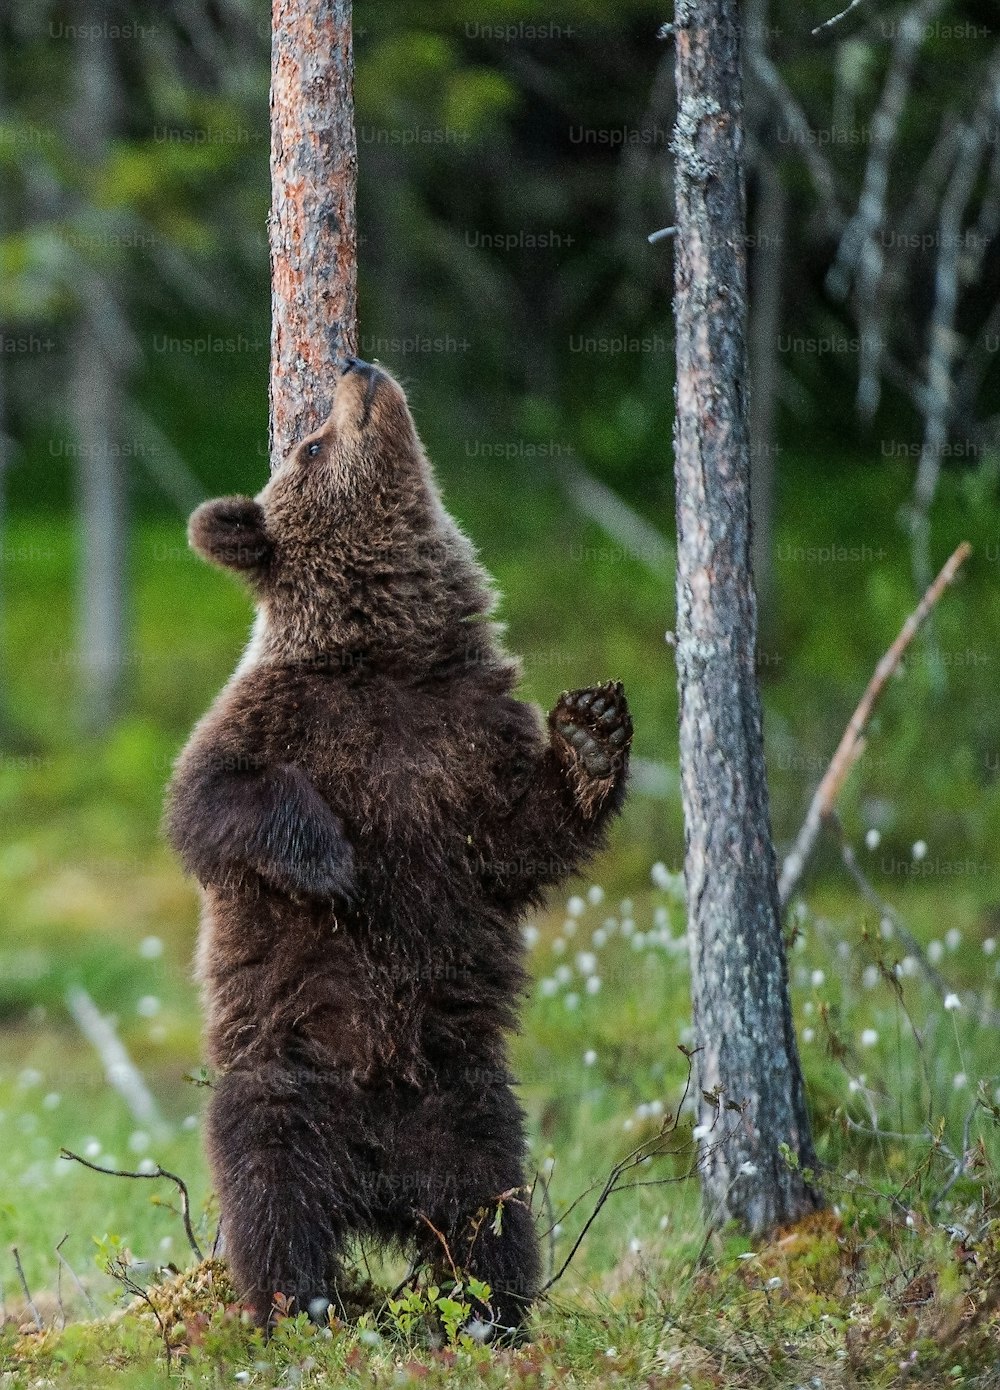 L’ourson brun se tient sur ses pattes arrière près d’un arbre dans la forêt d’été. Nom scientifique : Ursus Arctos (Ours brun). Fond naturel vert. Habitat naturel, saison estivale.